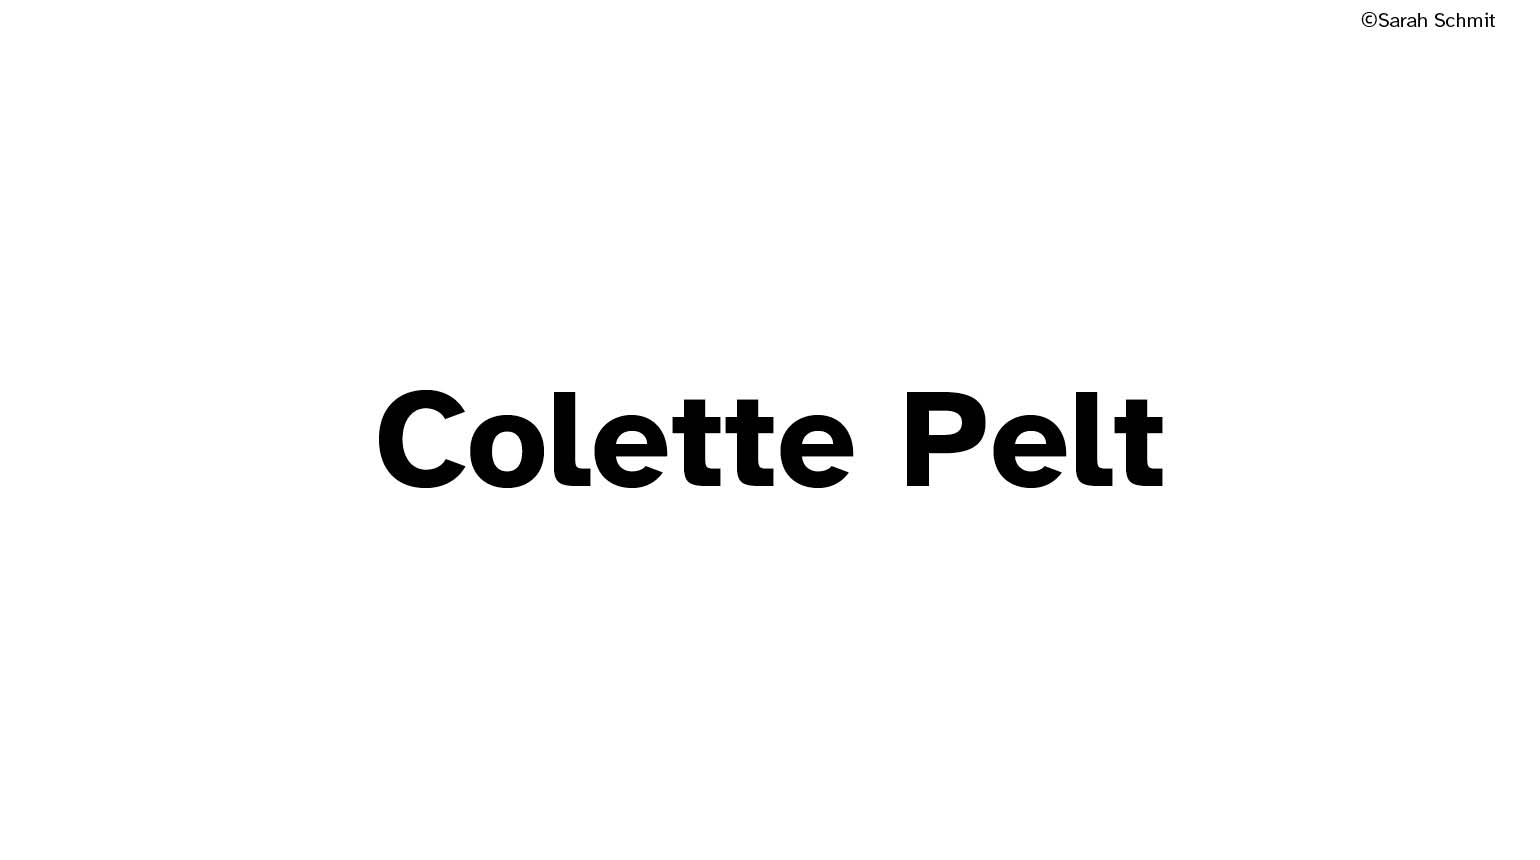 Colette Pelt